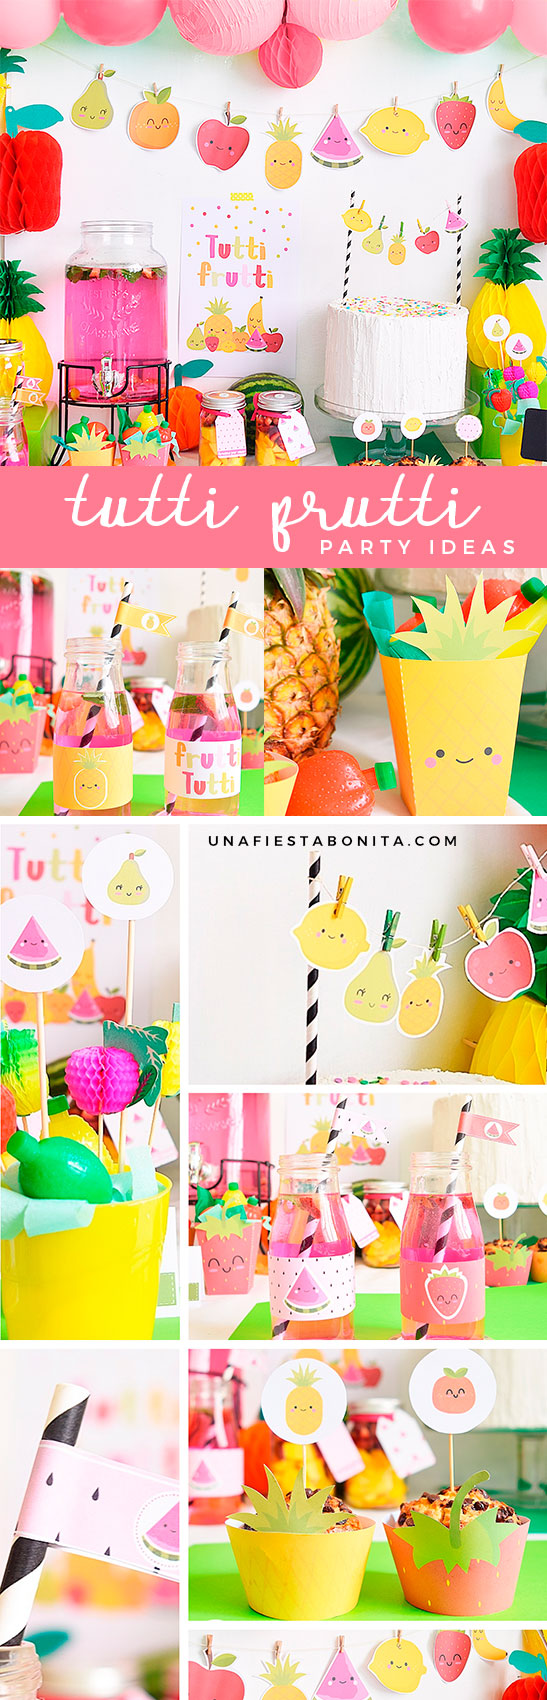 Party ideas Tutti Frutti